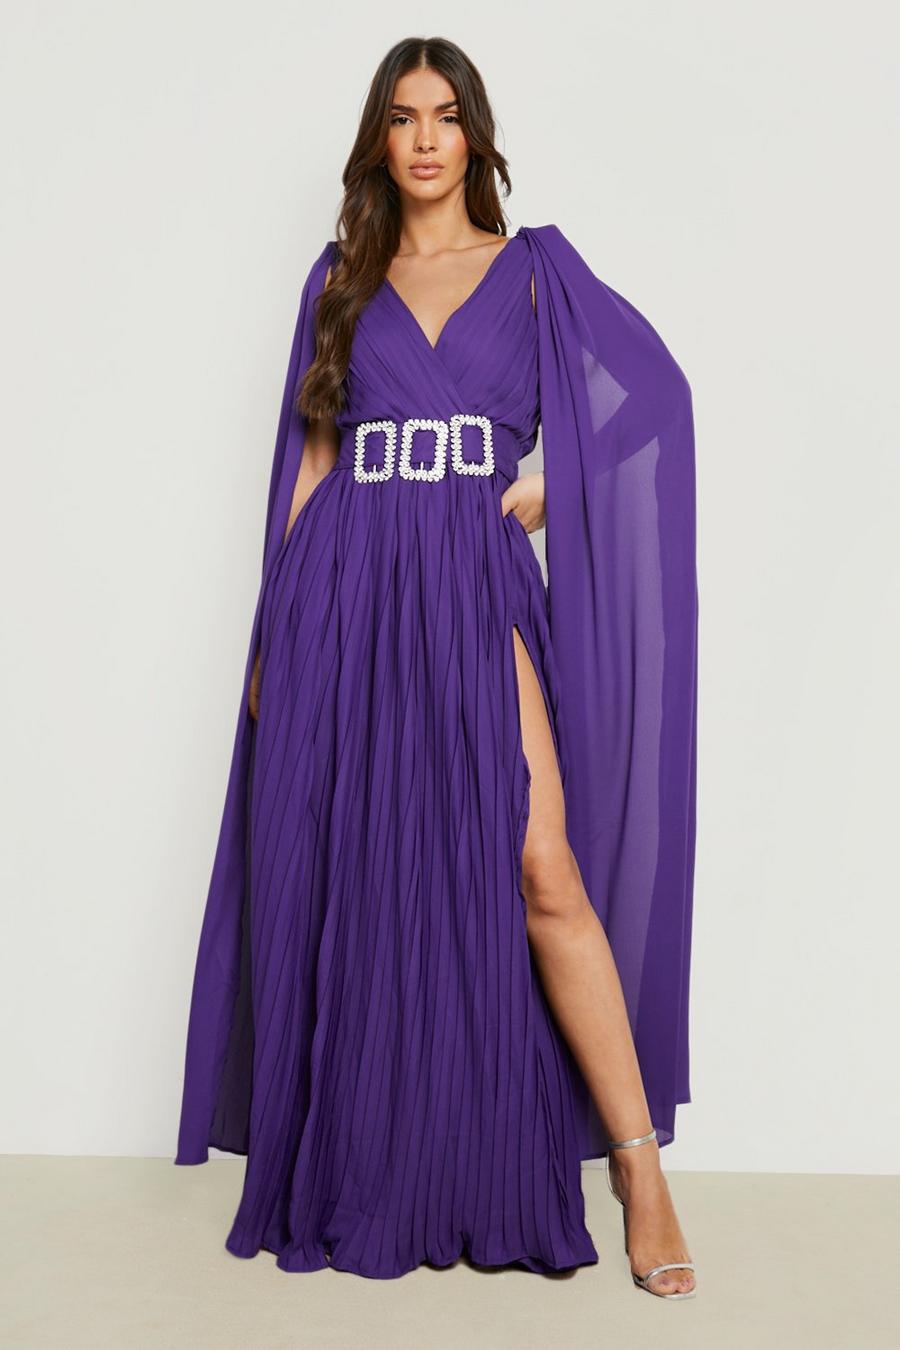 Robe cape plissée à strass, Jewel purple violet